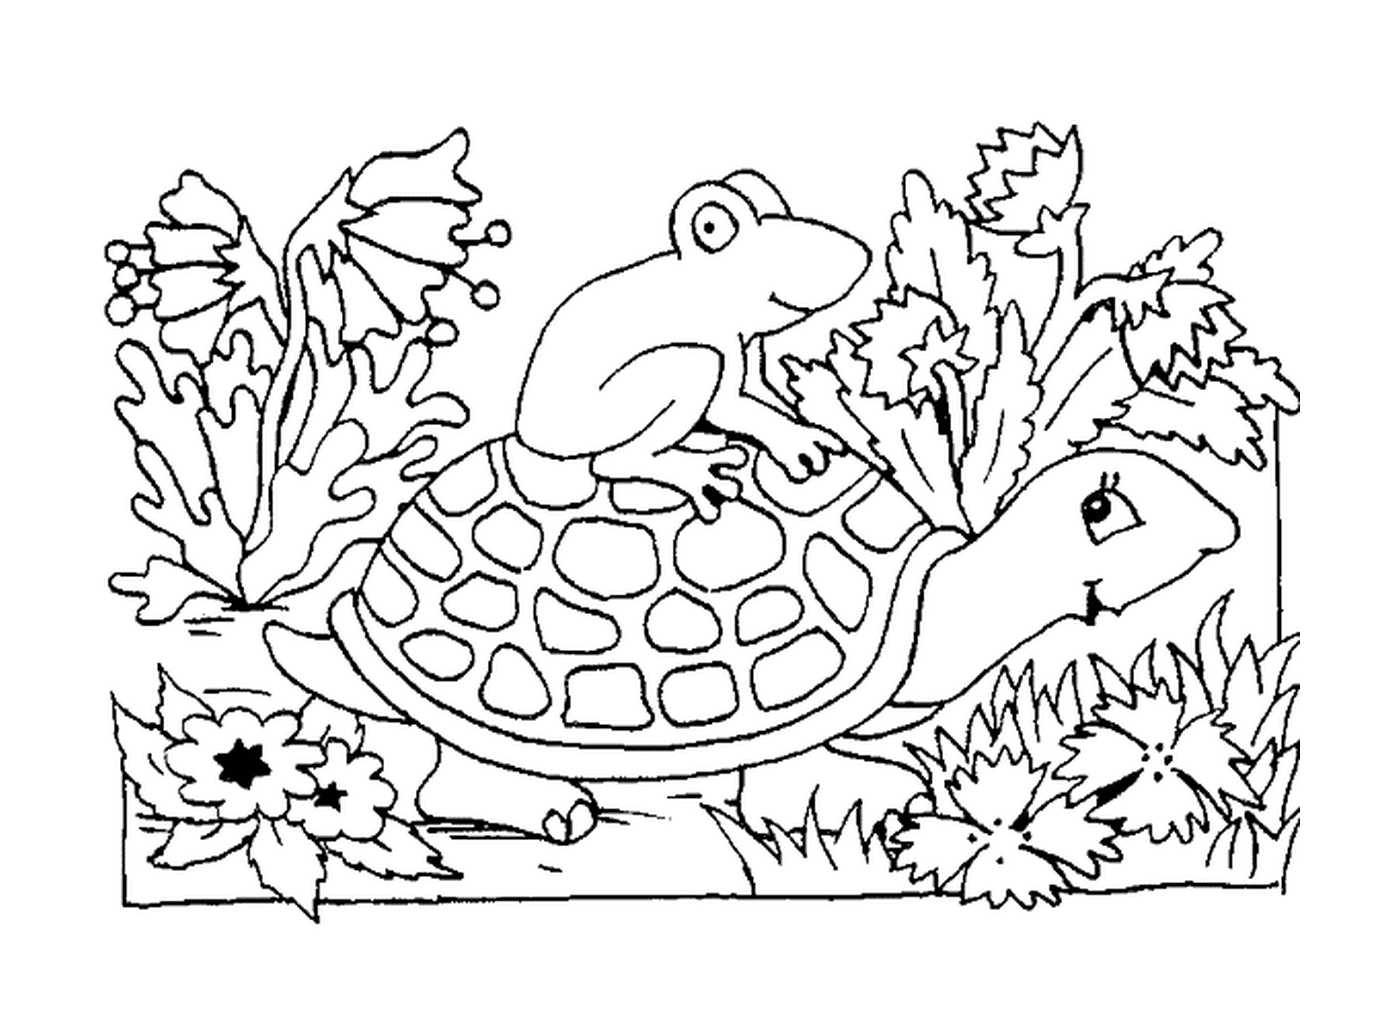  Frosch auf der Schale der Schildkröte 